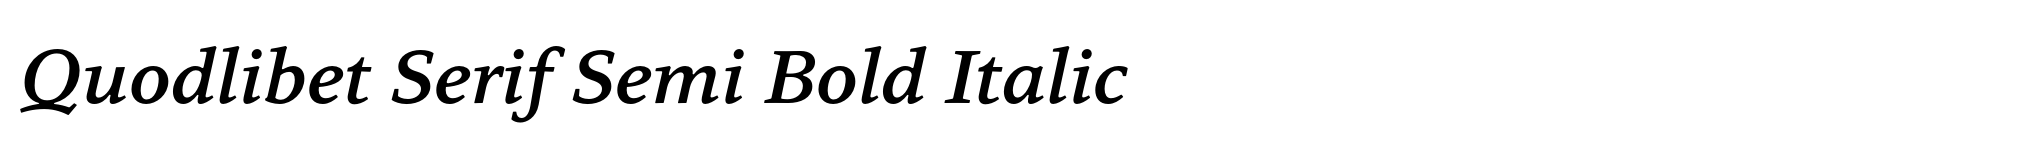 Quodlibet Serif Semi Bold Italic image